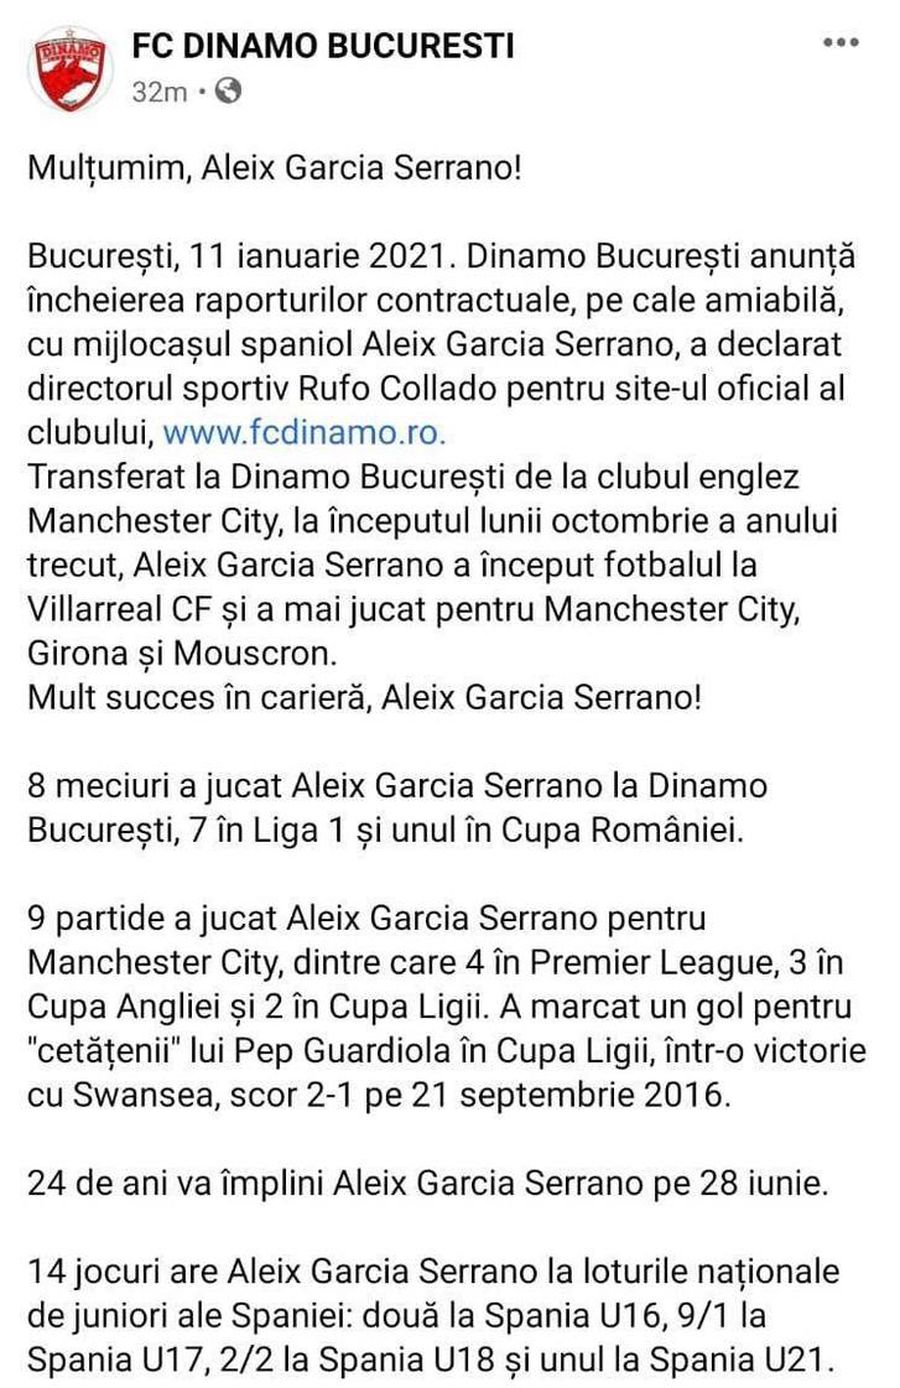 EXCLUSIV Situație penibilă la Dinamo! Pablo Cortacero i-a „țepuit” pe suporterii din DDB în cazul lui Aleix Garcia: „Vrei să îngropi clubul!”